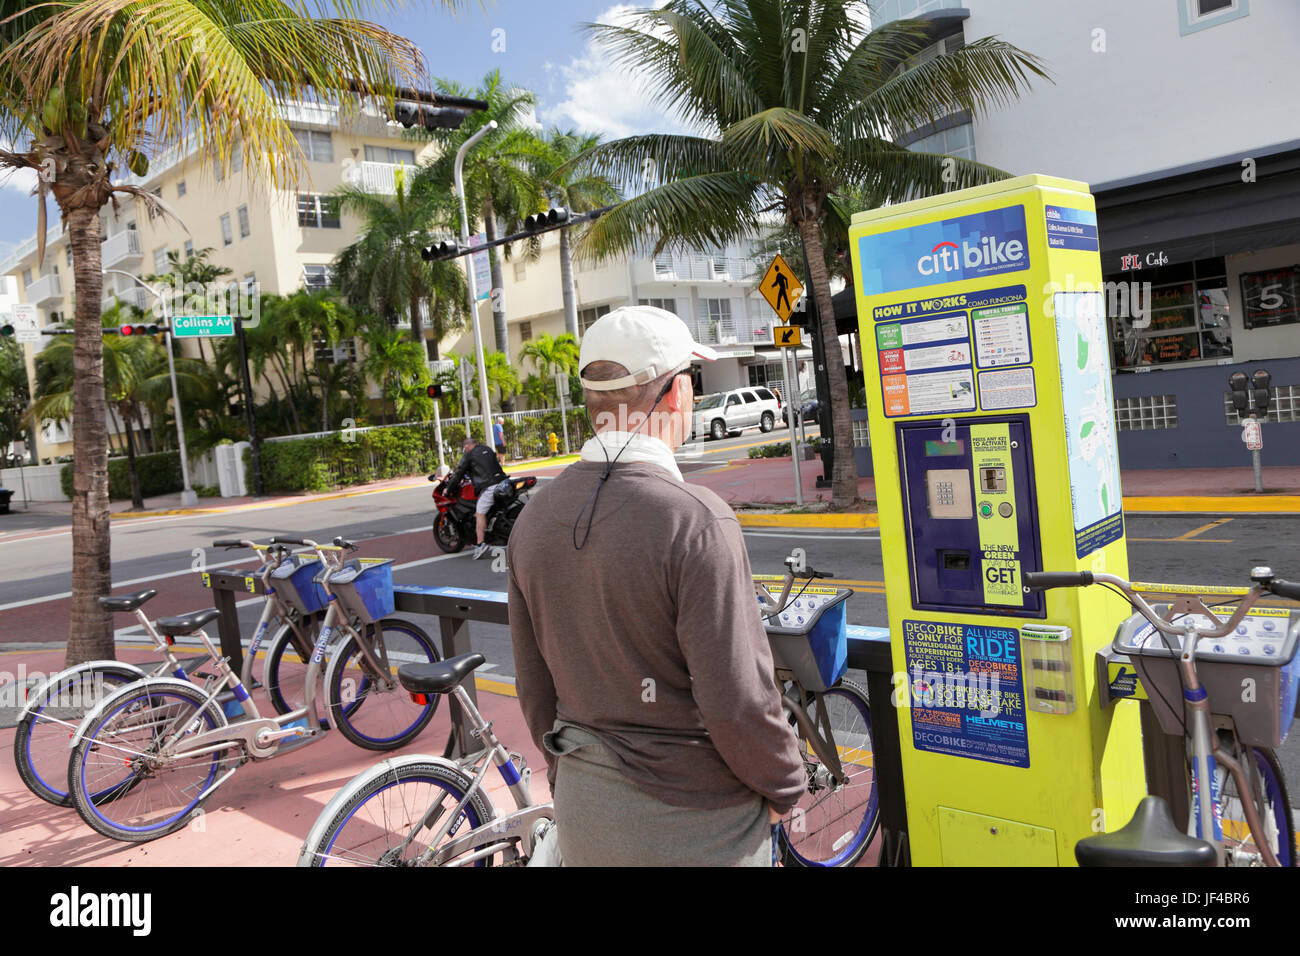 Bike rental station, Miami Beach, Florida, USA Stock Photo